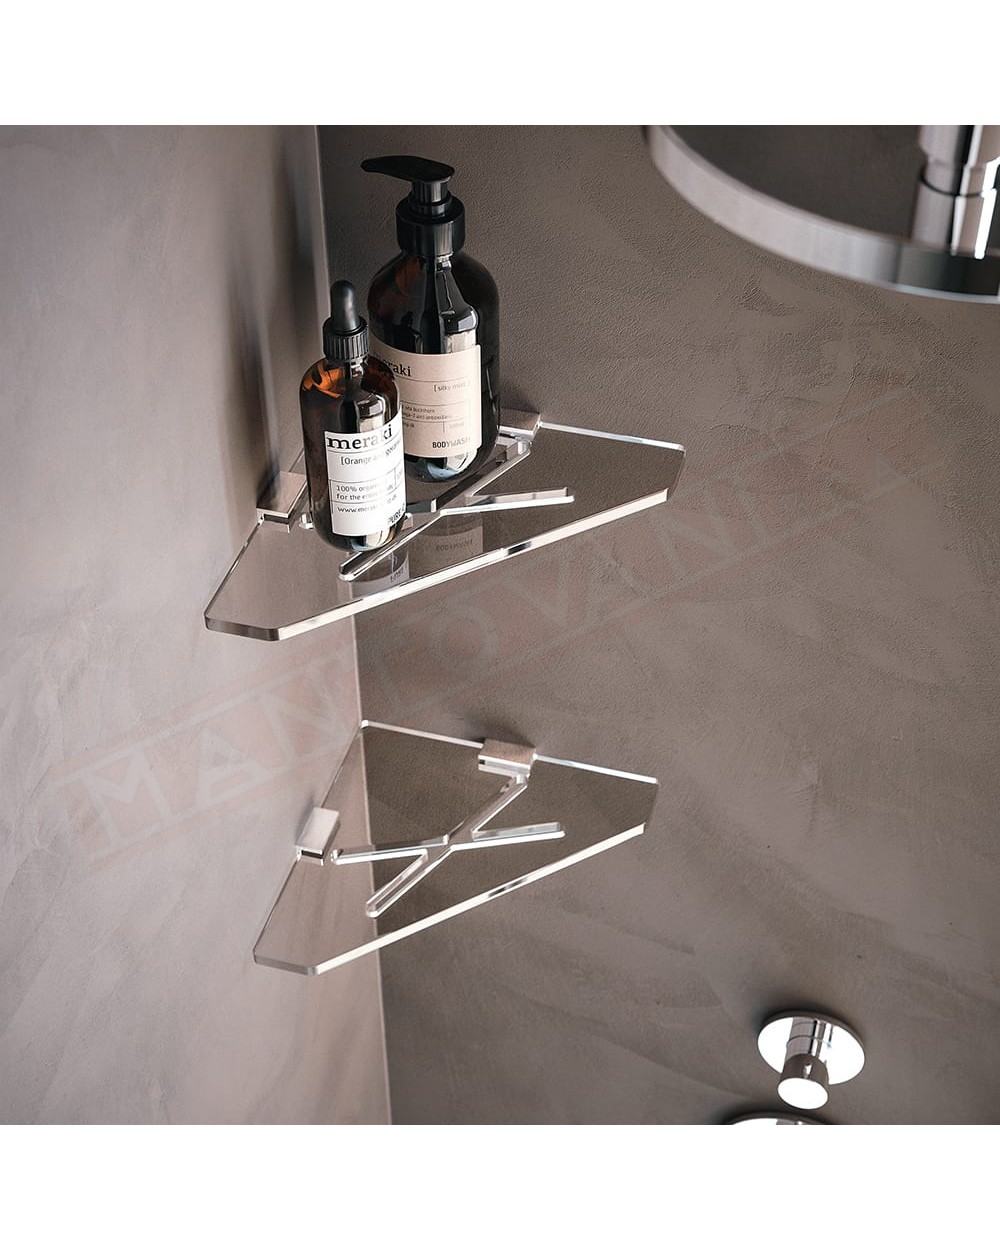 Tl.bath Joly angolare doccia fissaggio a tassello 240x20x240 mm in plexyglas trasparente e ottone cromato